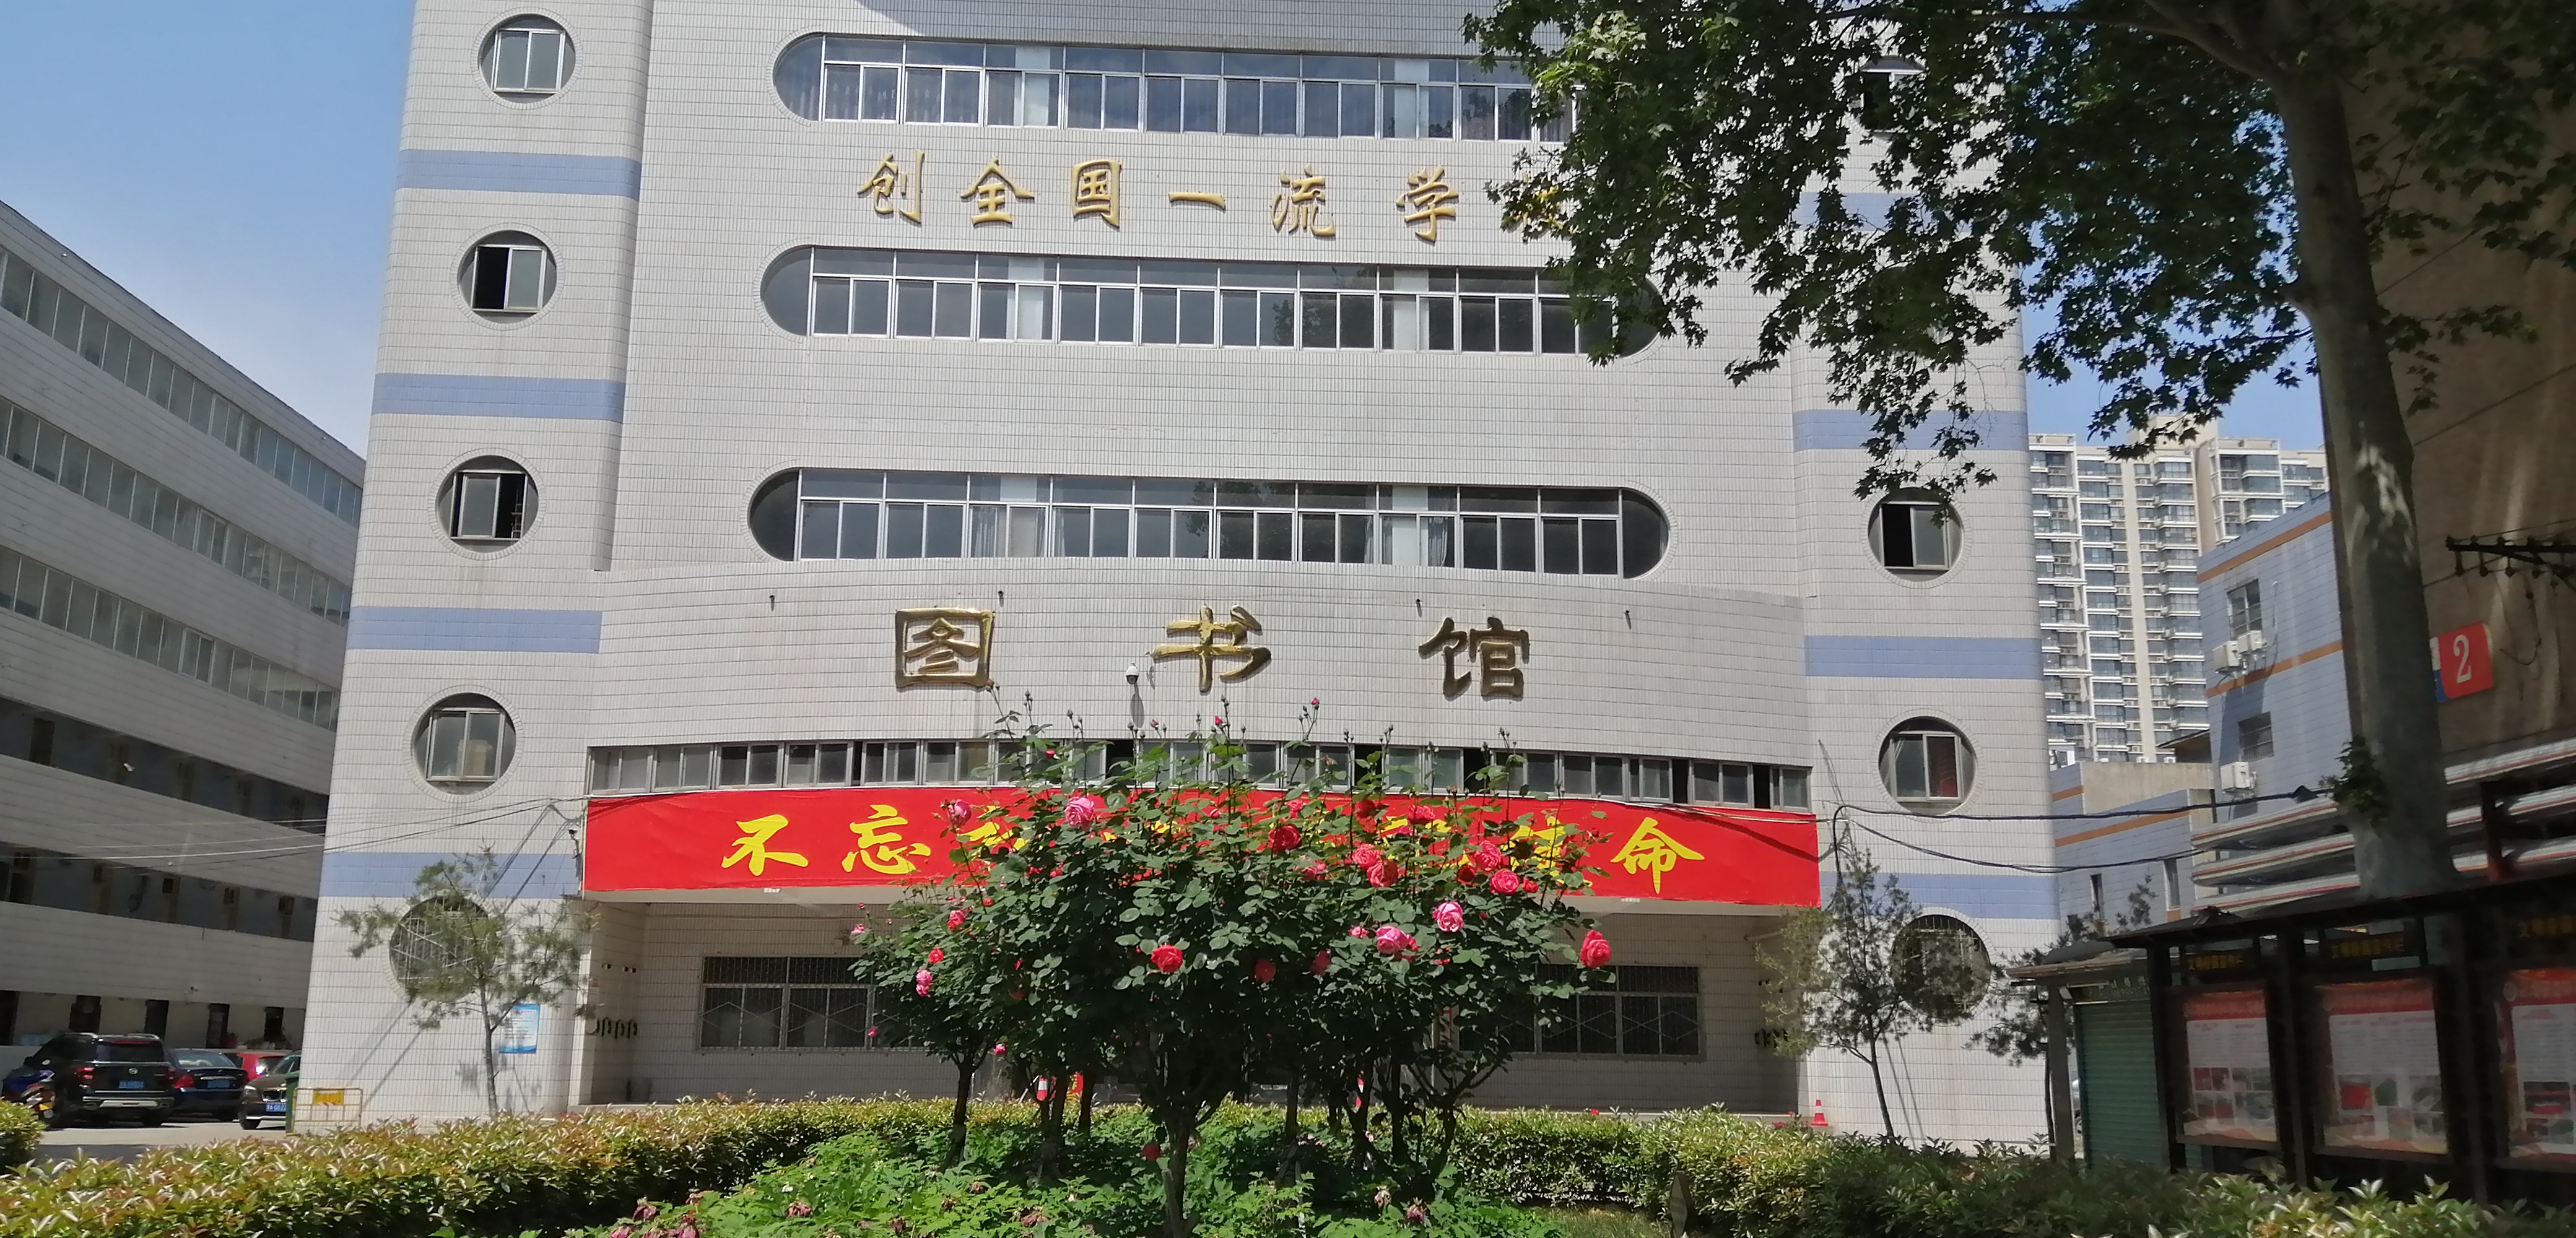 由具有二十余年成功高考经验的郑州新世纪高考学校全面引进原郑州外国